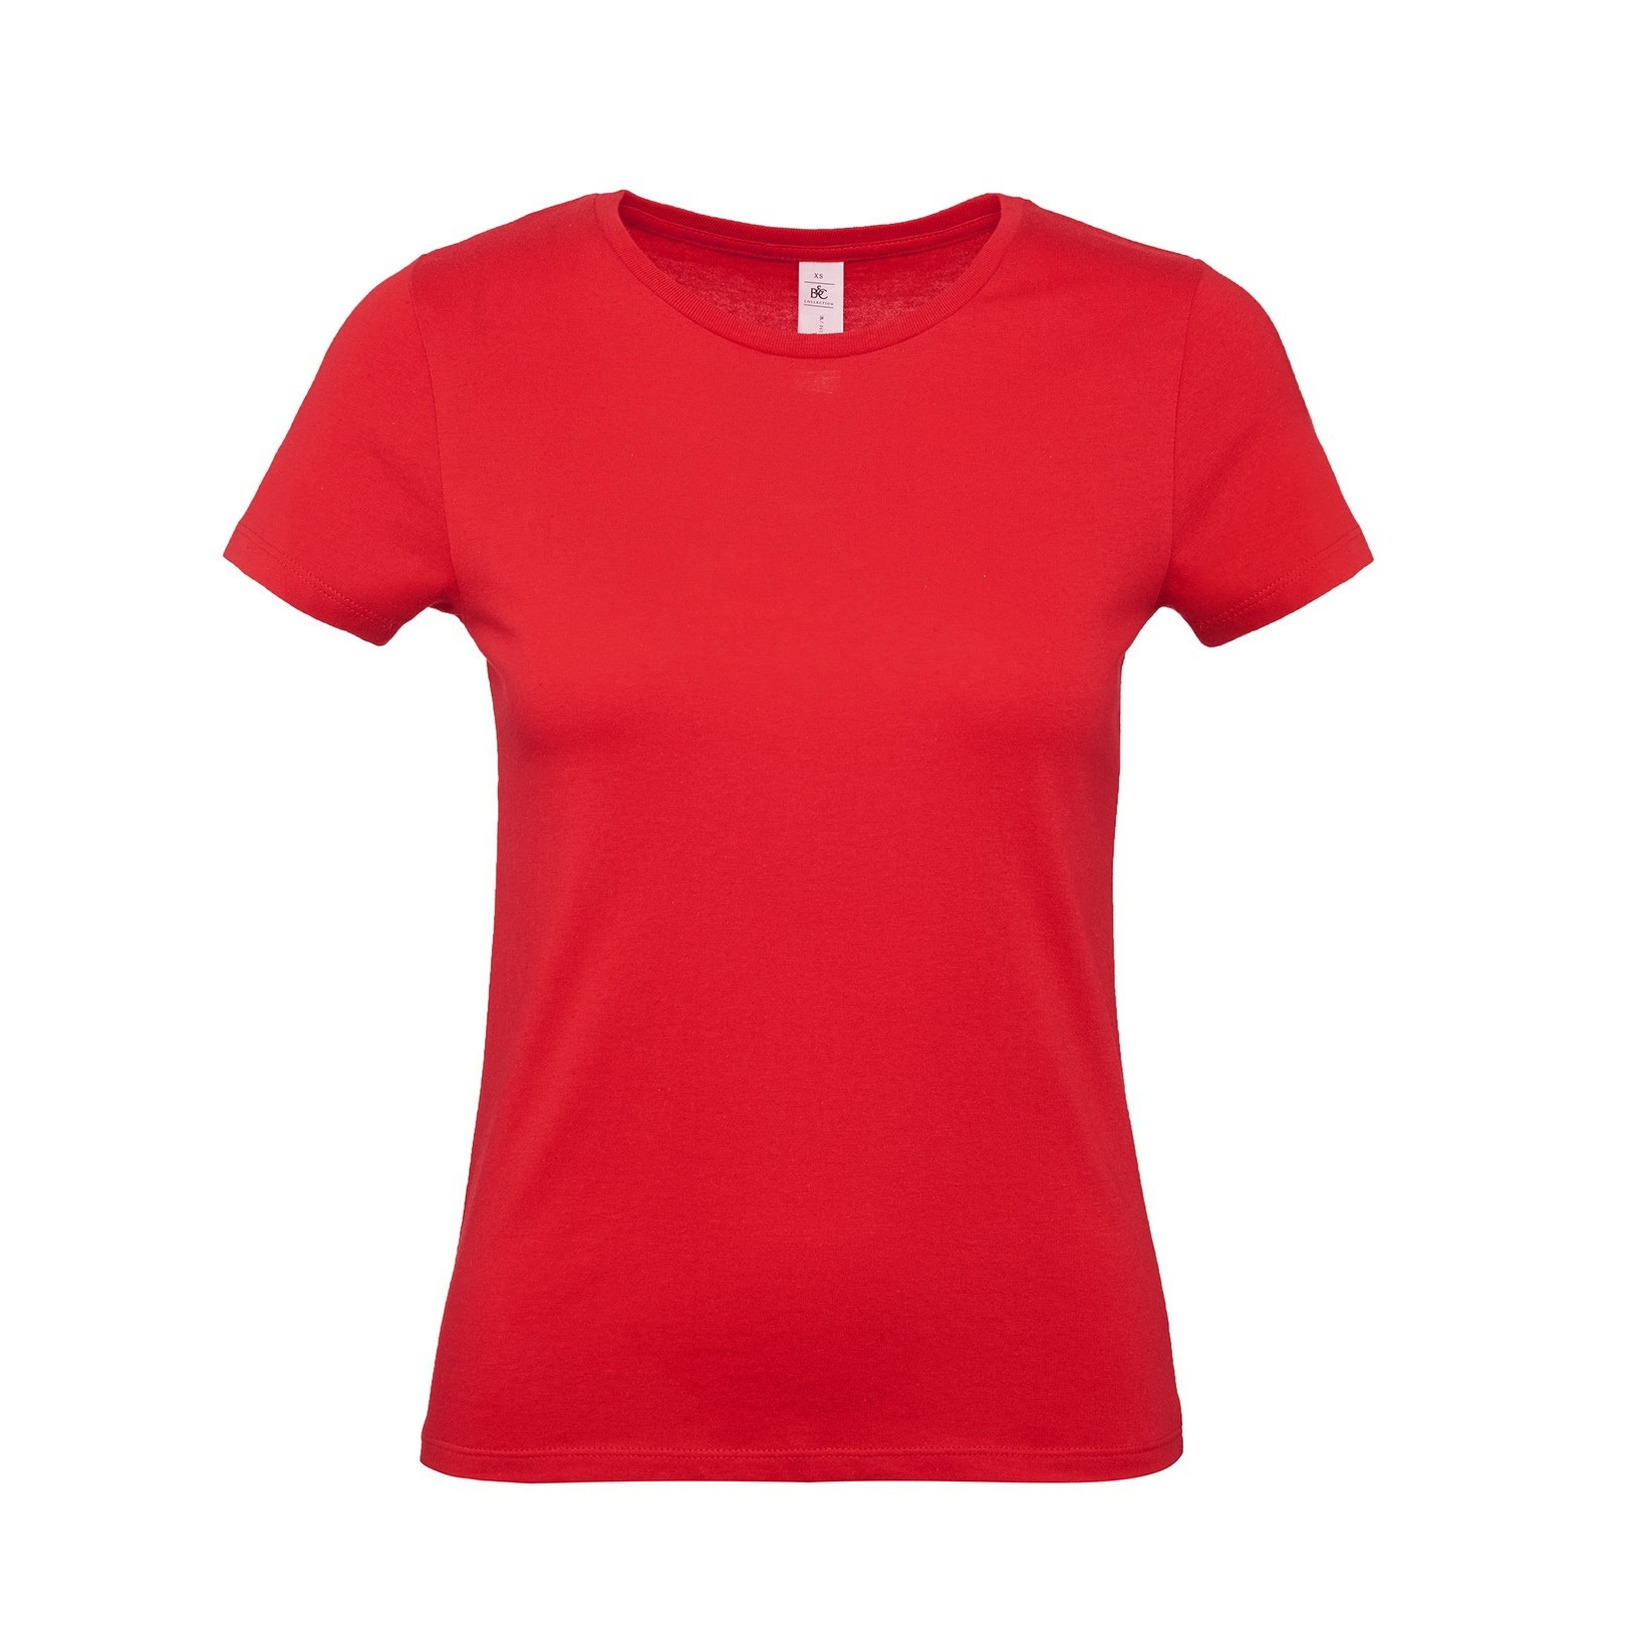 Set van 2x stuks rood basic t-shirts met ronde hals voor dames van katoen, maat: L (40)